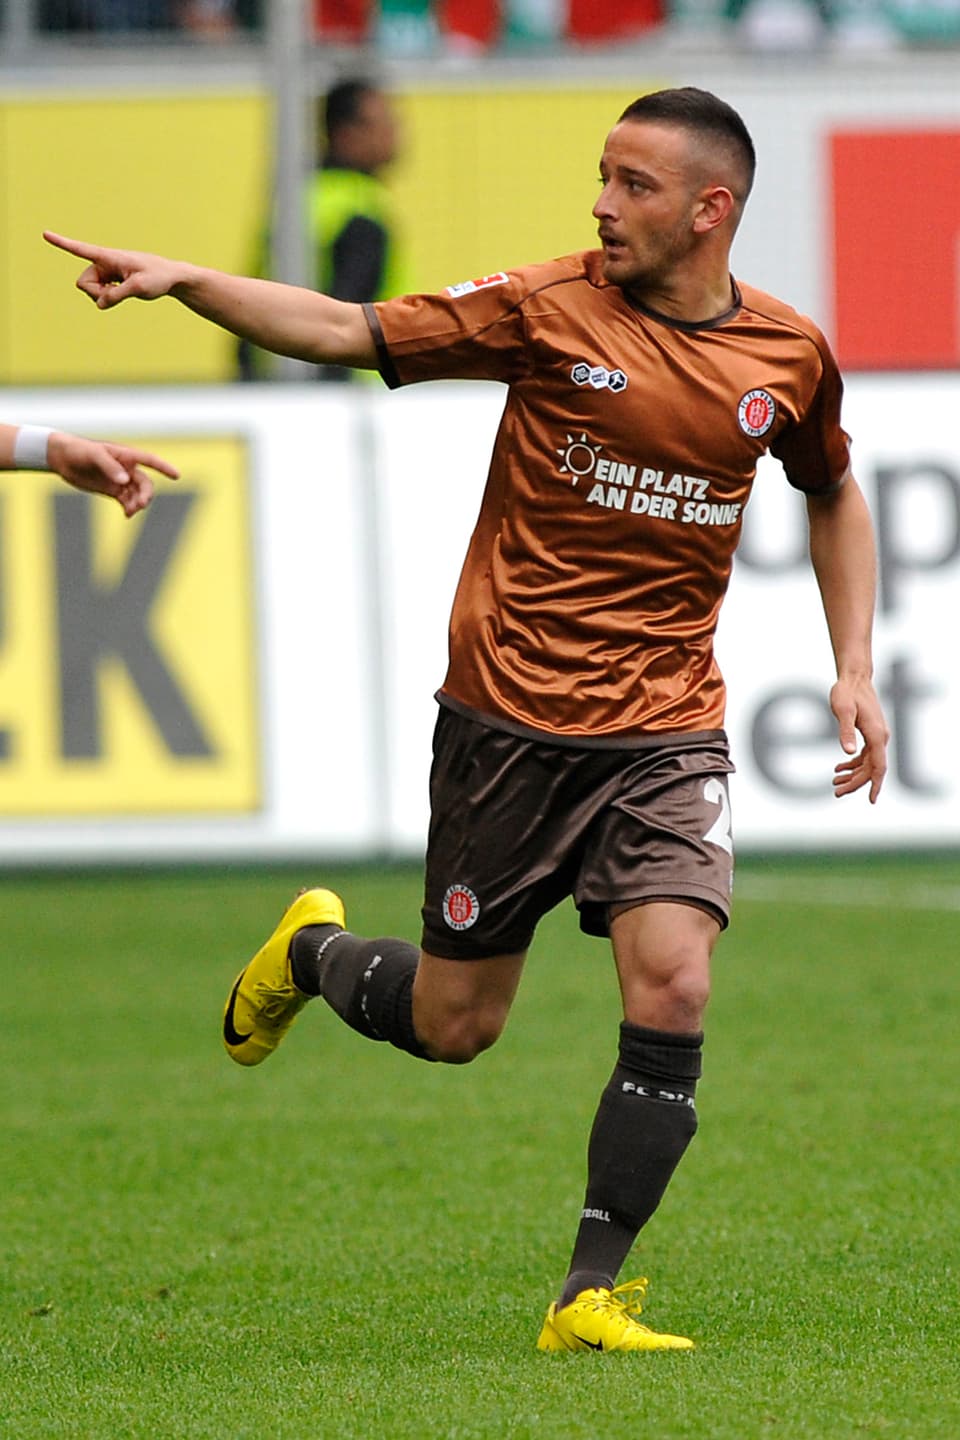 Deniz Nak rennend mit Zeigefinger in der Luft auf dem Fussballplatz